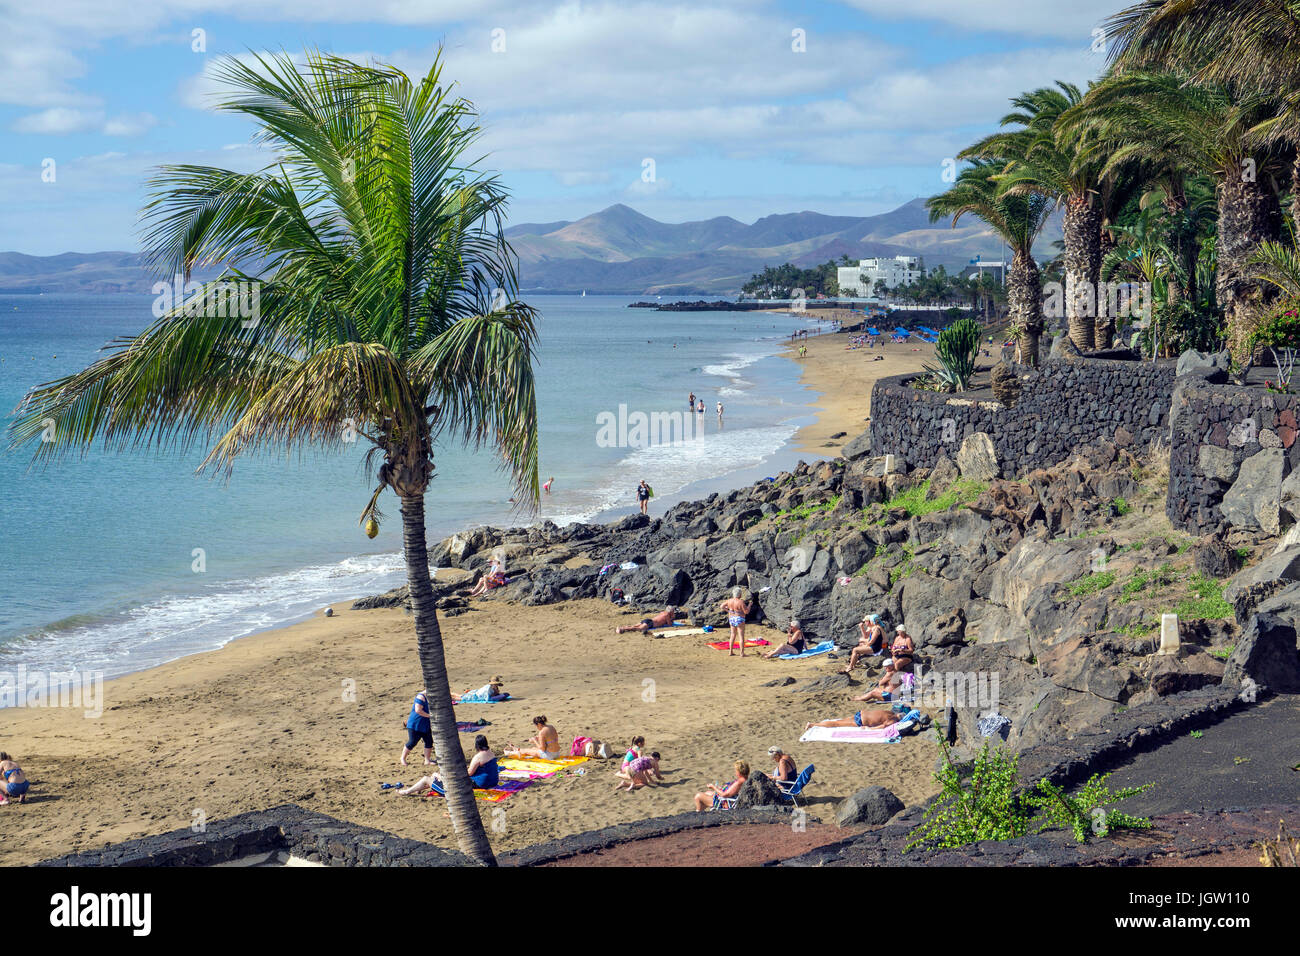 Les gens sur les plages entre les roches de lave, Puerto del Carmen, Lanzarote, îles Canaries, Espagne, Europe Banque D'Images